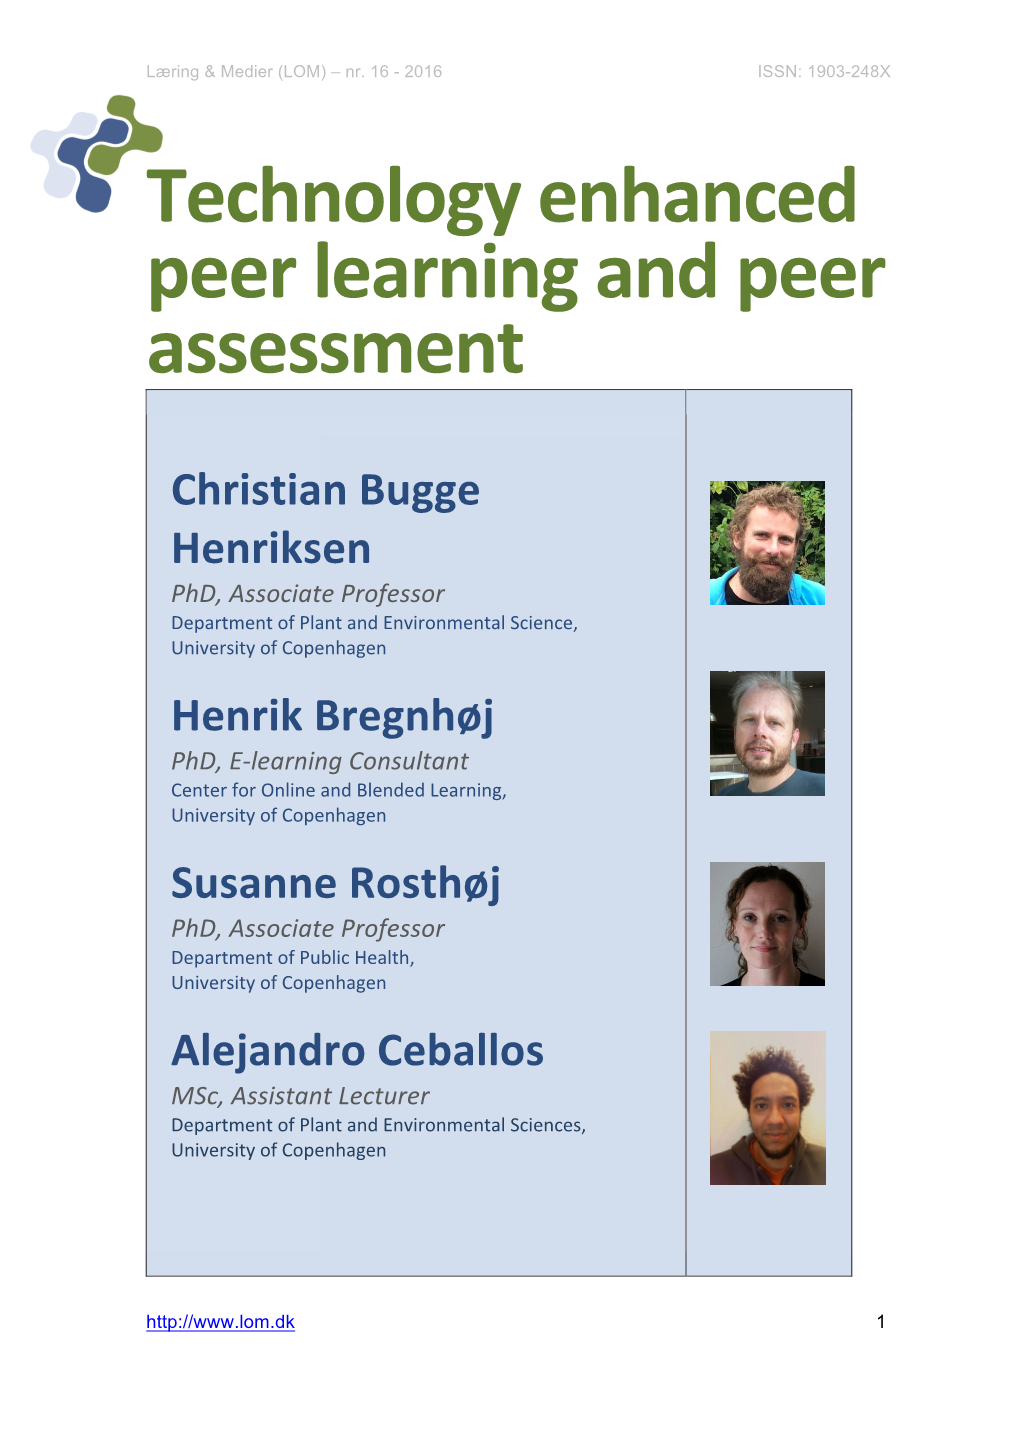 Technology Enhanced Peer Learning and Peer Assessment